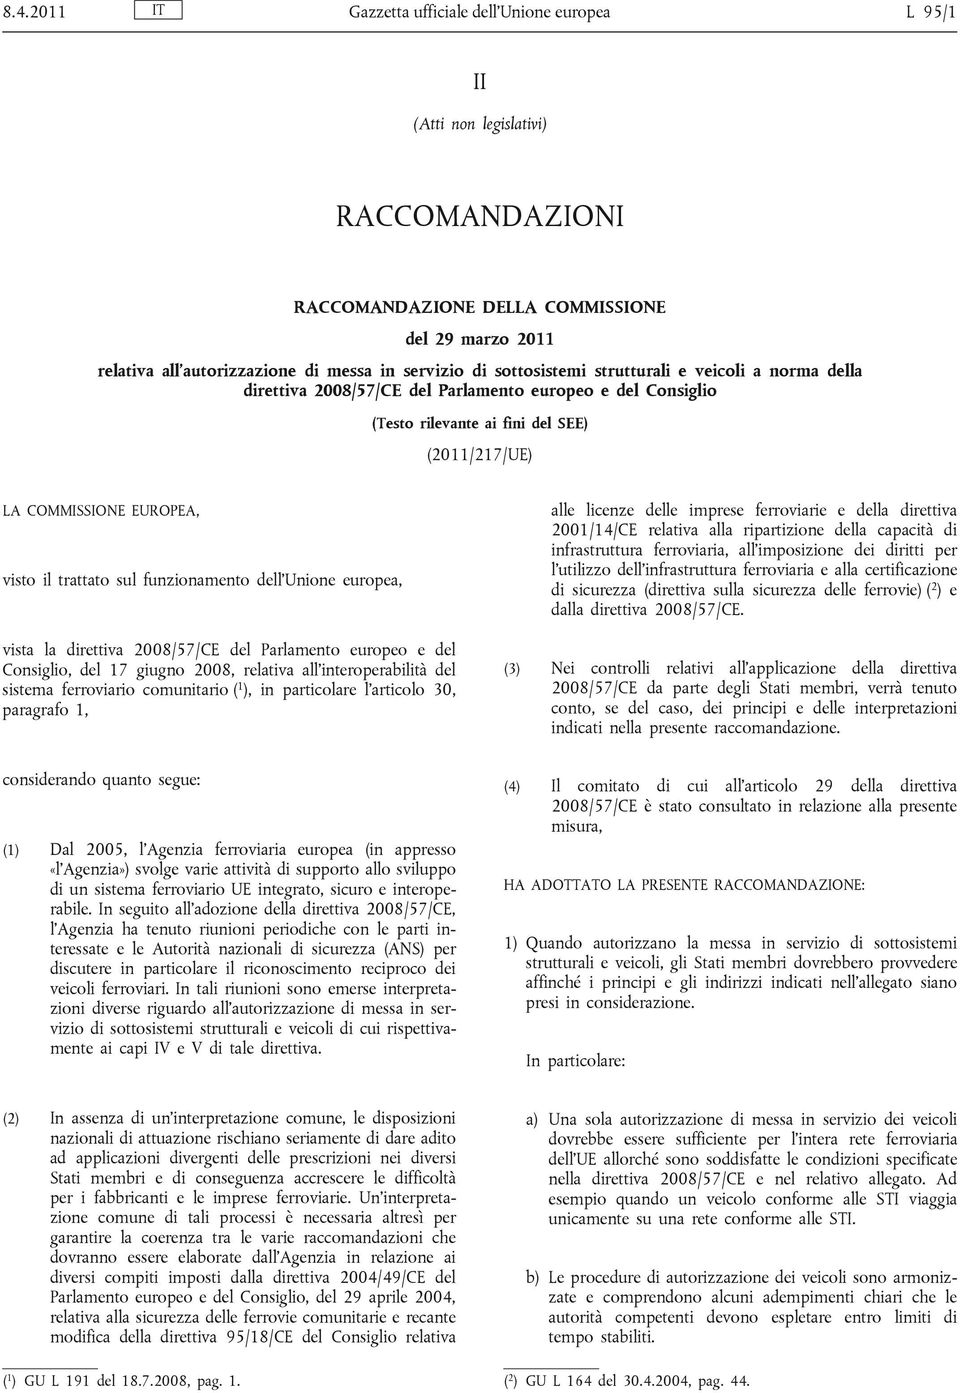 trattato sul funzionamento dell Unione europea, vista la direttiva 2008/57/CE del Parlamento europeo e del Consiglio, del 17 giugno 2008, relativa all interoperabilità del sistema ferroviario